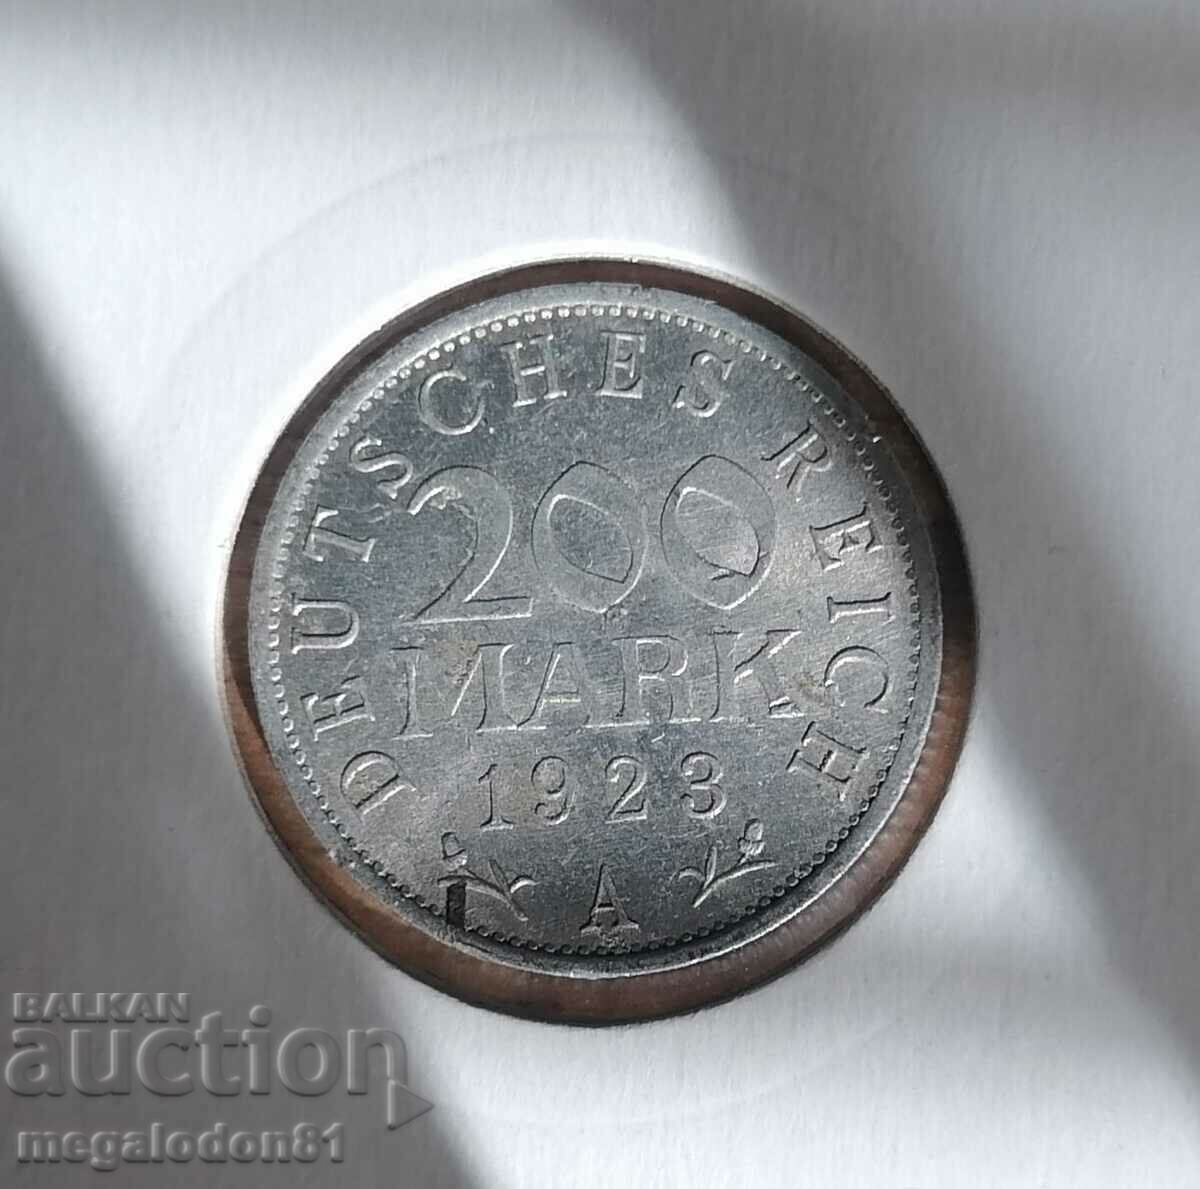 Germany - 200 marks 1923